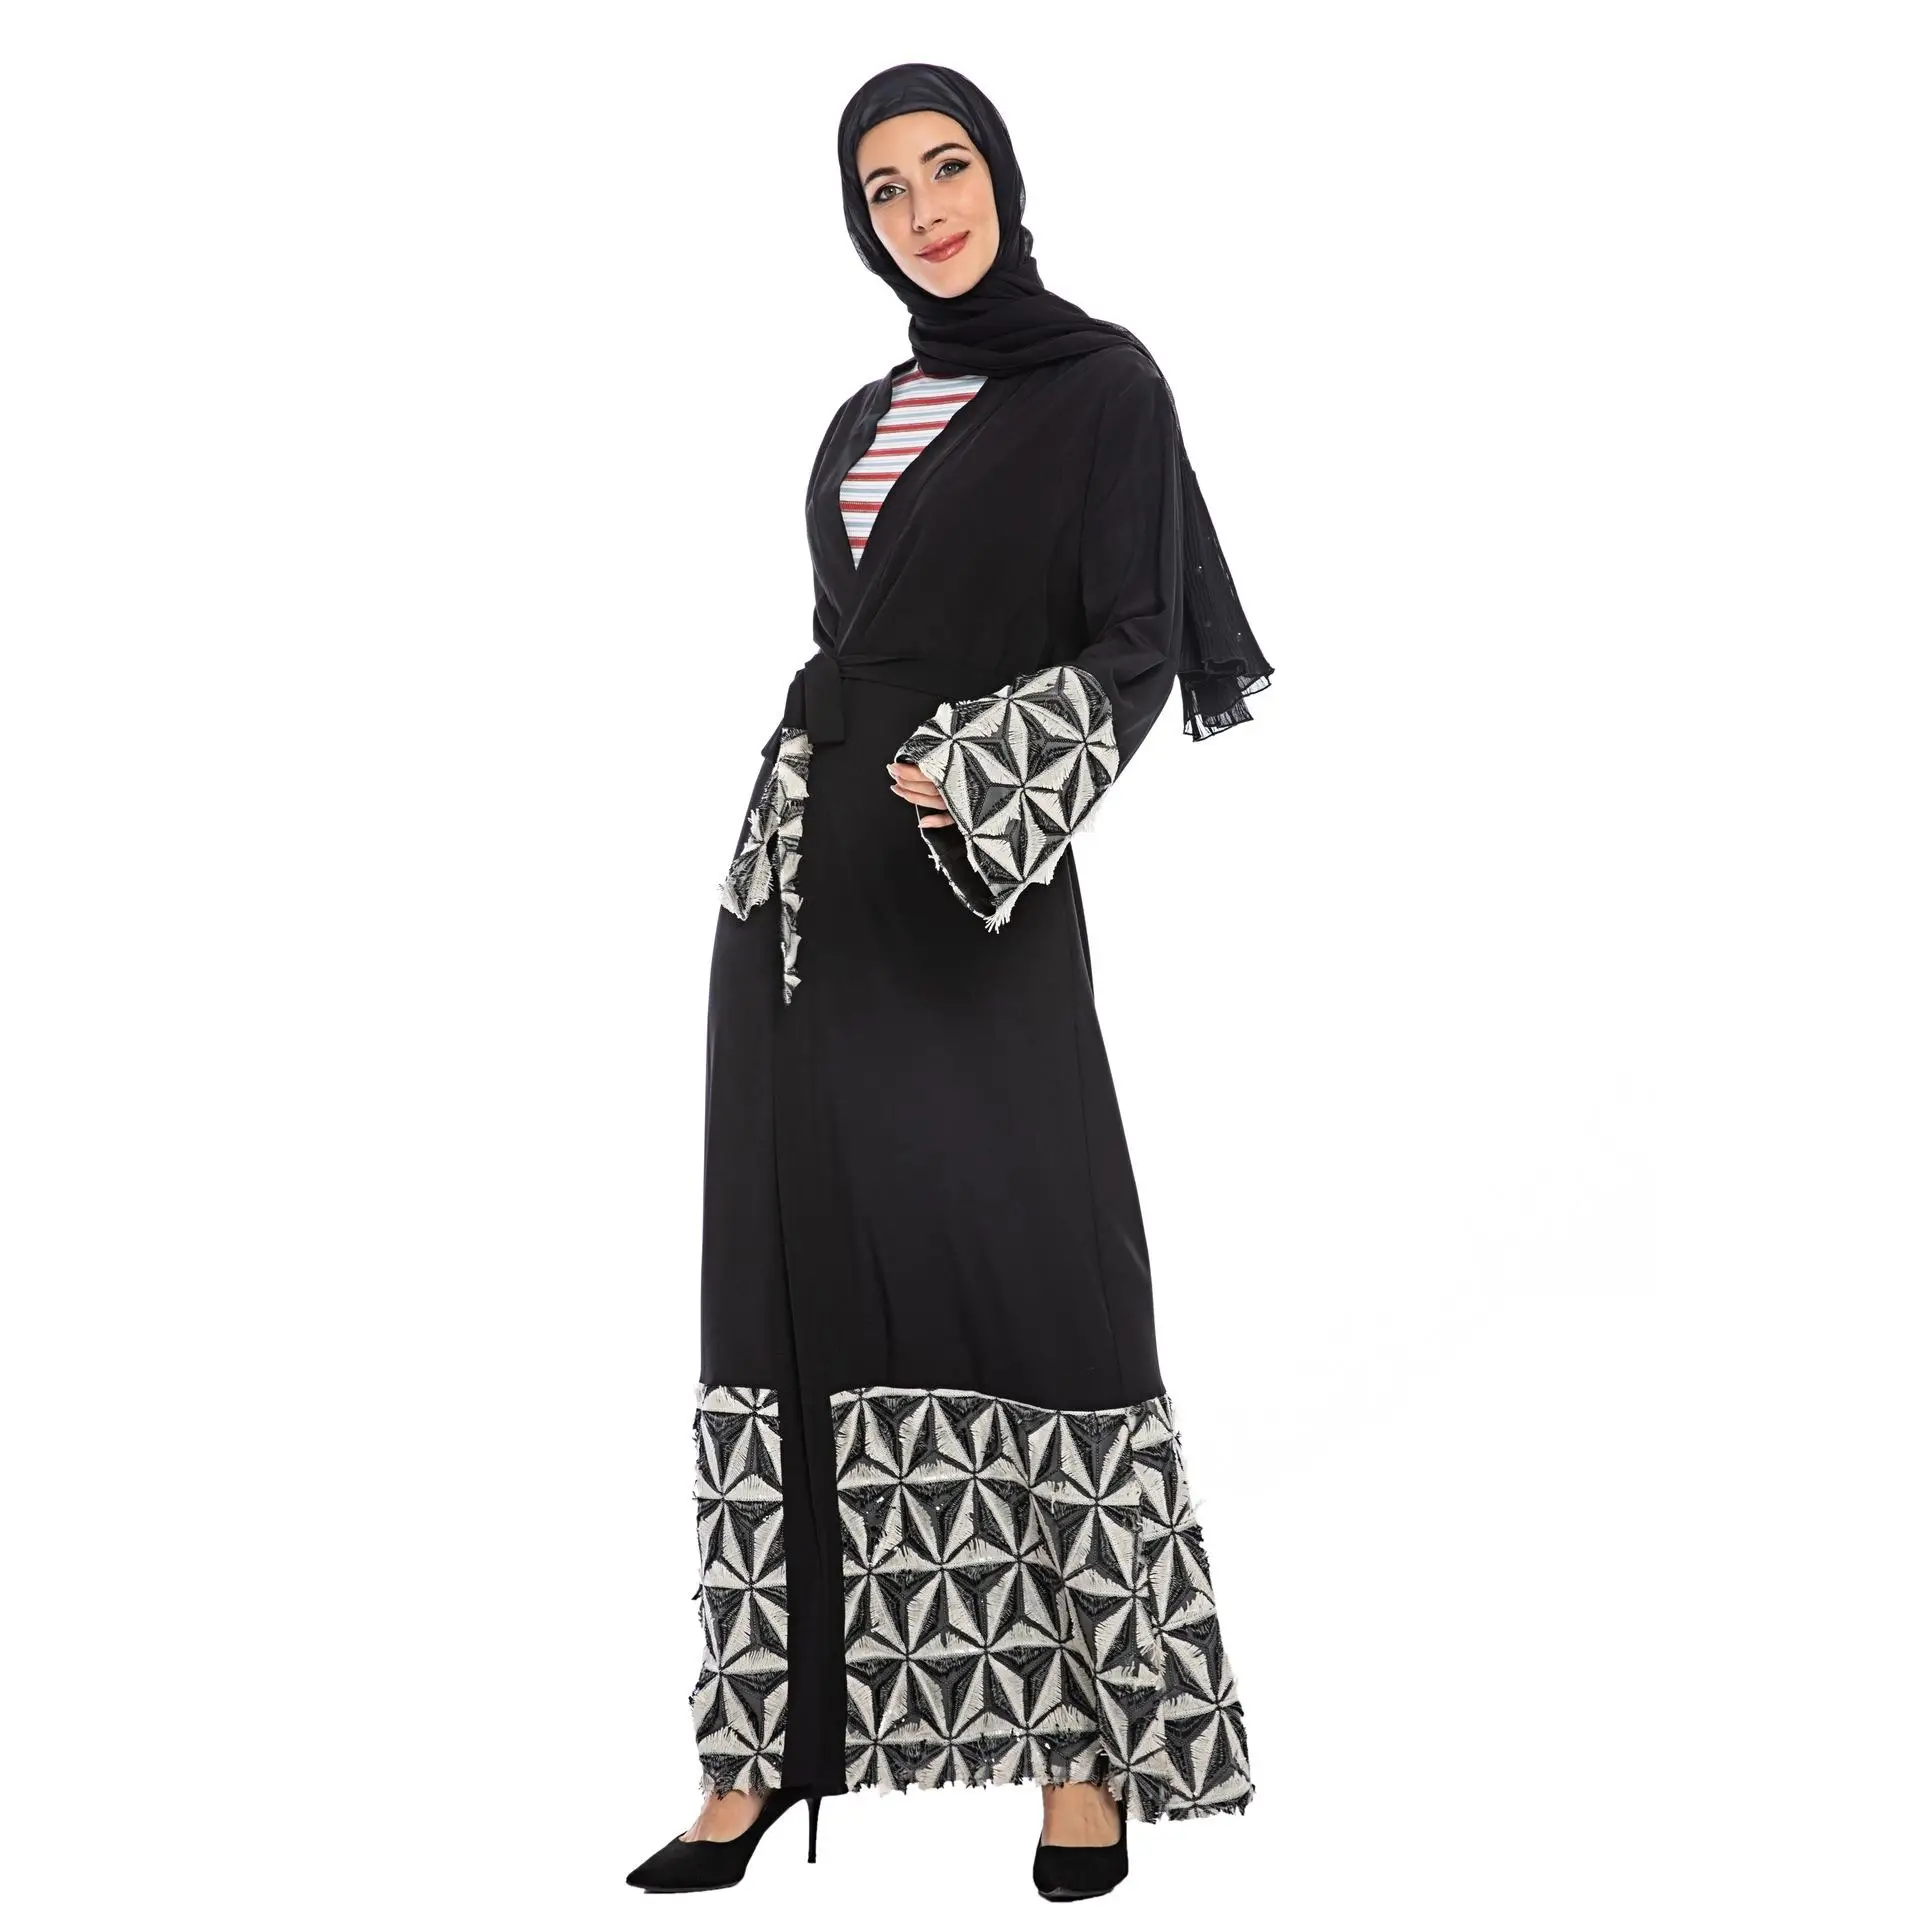 Дубай открытый абайя кимоно кафтан мусульманских женщин длинный кардиган исламское Макси платье лоскутное длинный рукав халат платье